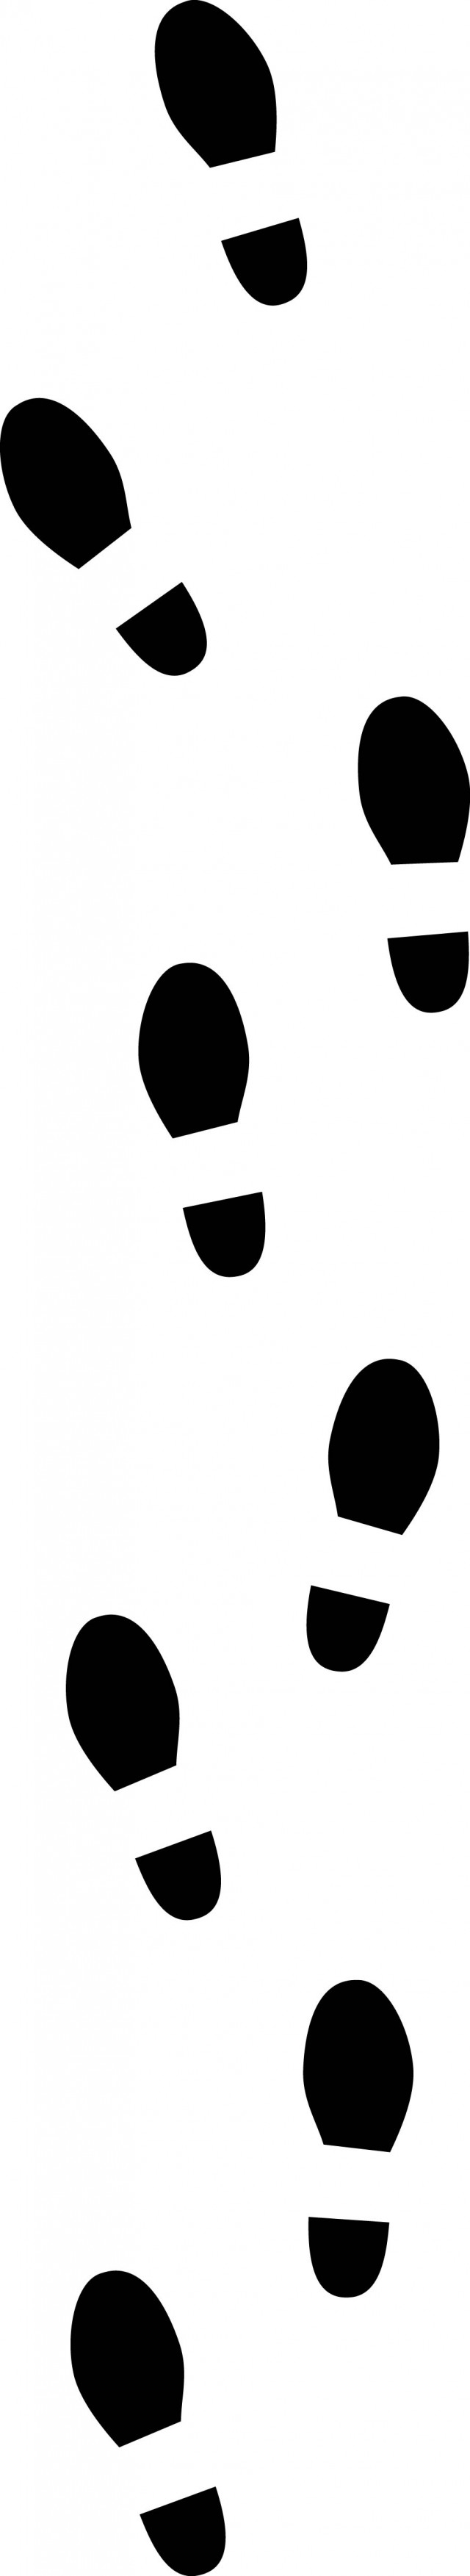 靴足跡軌跡 無料イラスト素材 素材ラボ